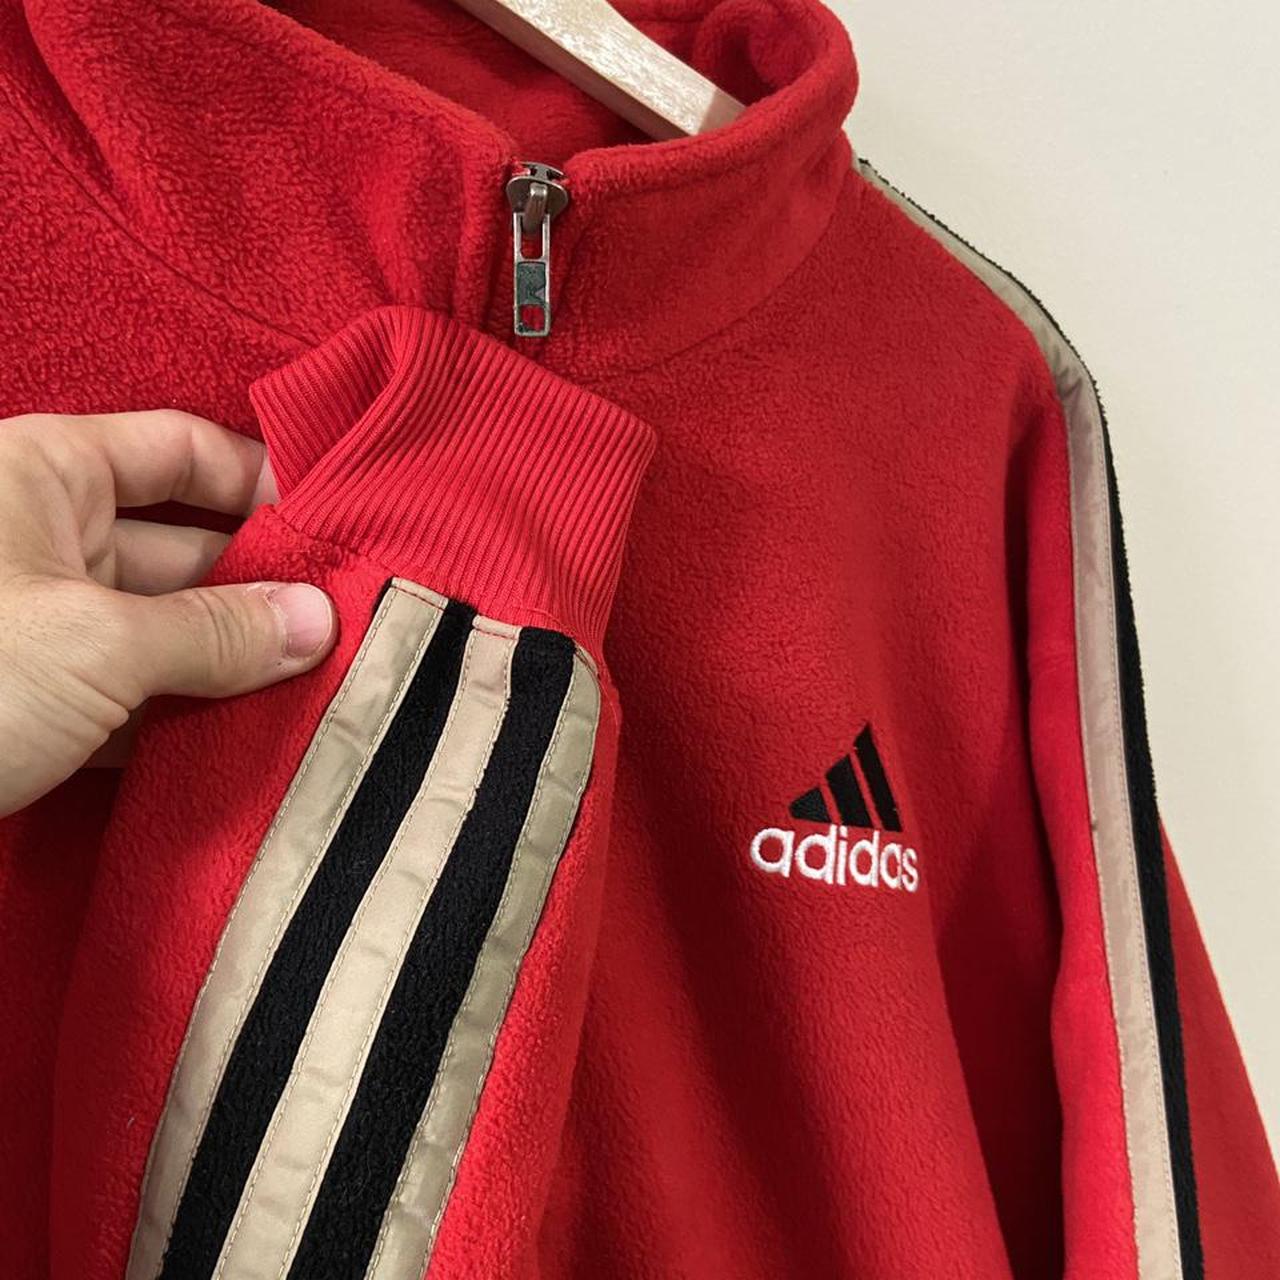 Vintage 90s adidas half zip red fleece sweatshirt... - Depop